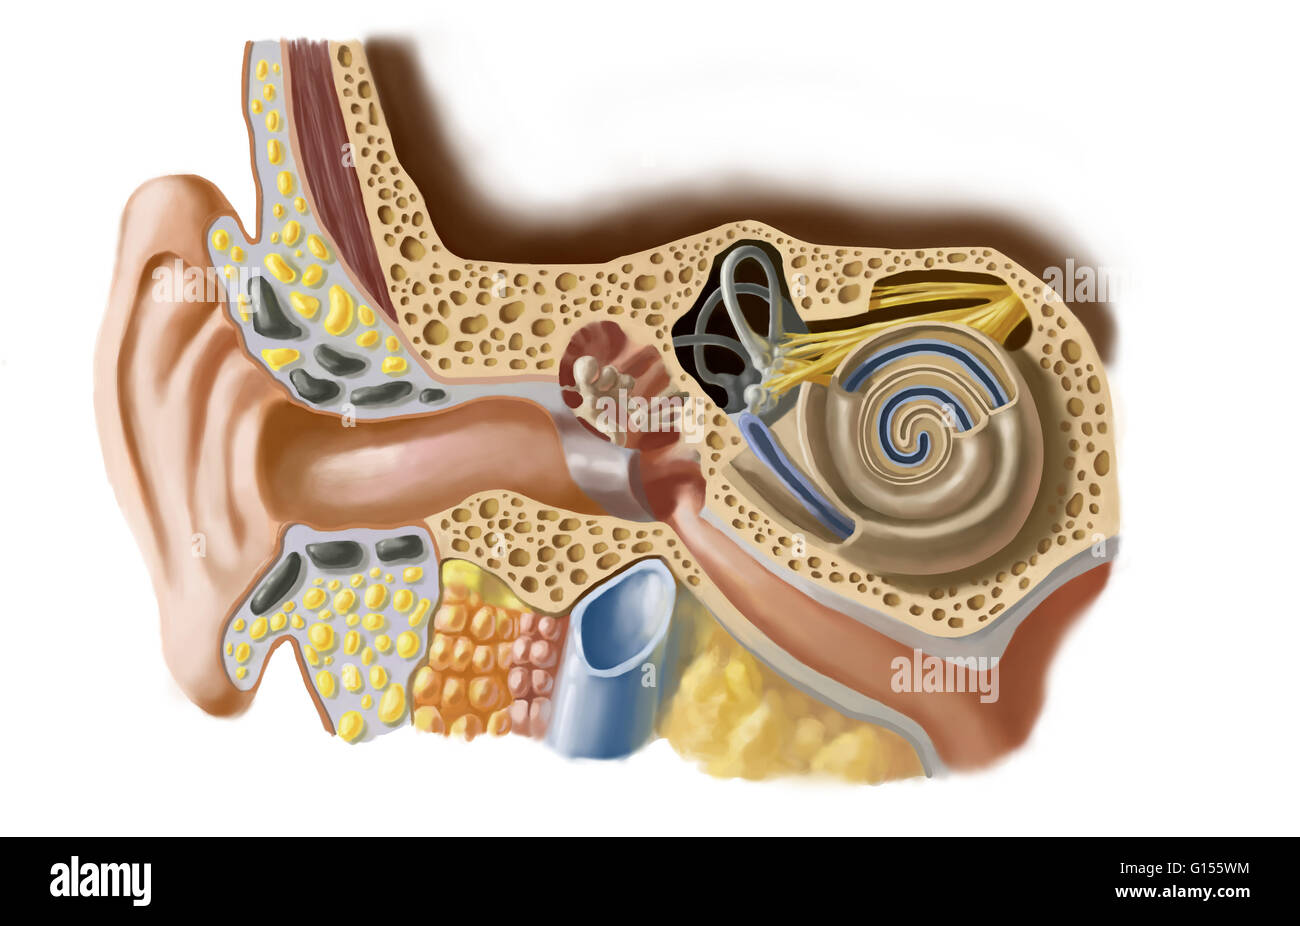 Schéma de l'oreille humaine. L'oreille interne permet l'analyse des sons et  leur transmission au cerveau par le nerf auditif. Il comprend le vestibule,  les canaux semi-circulaires et de la cochlée. Il est